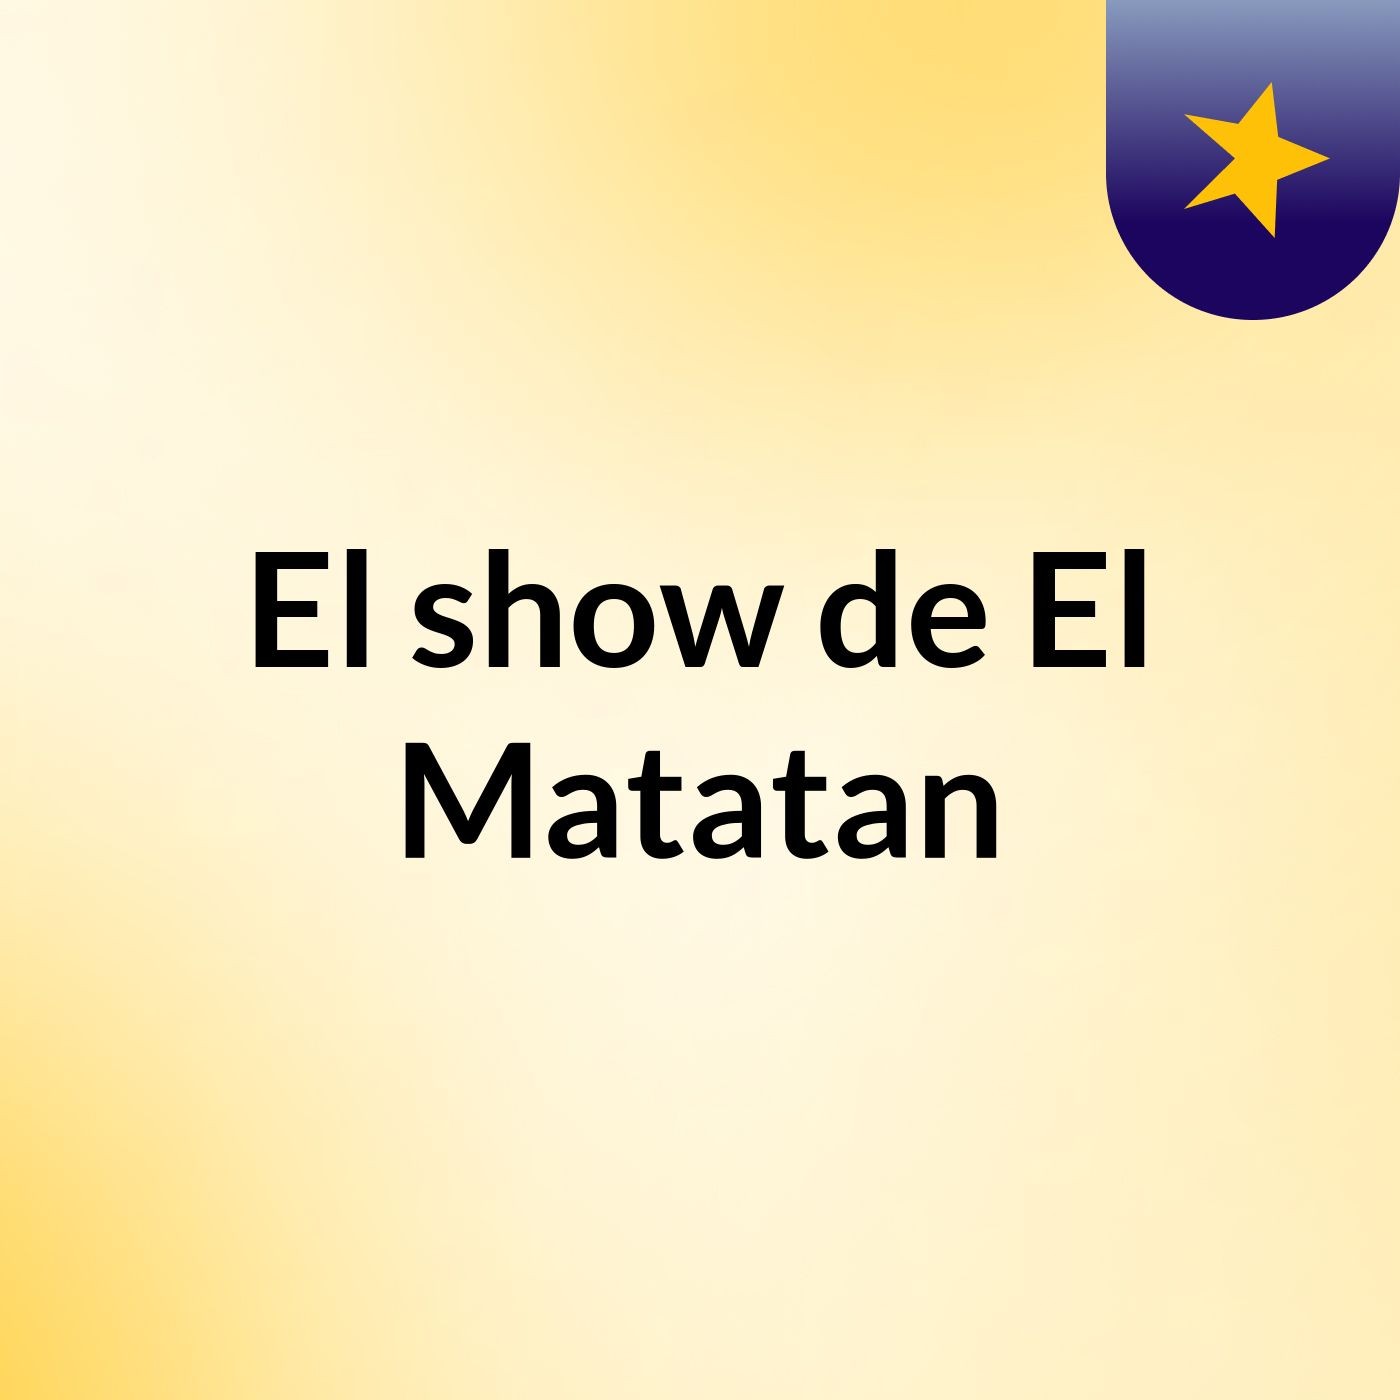 Episodio 3 - El show de El Matatan